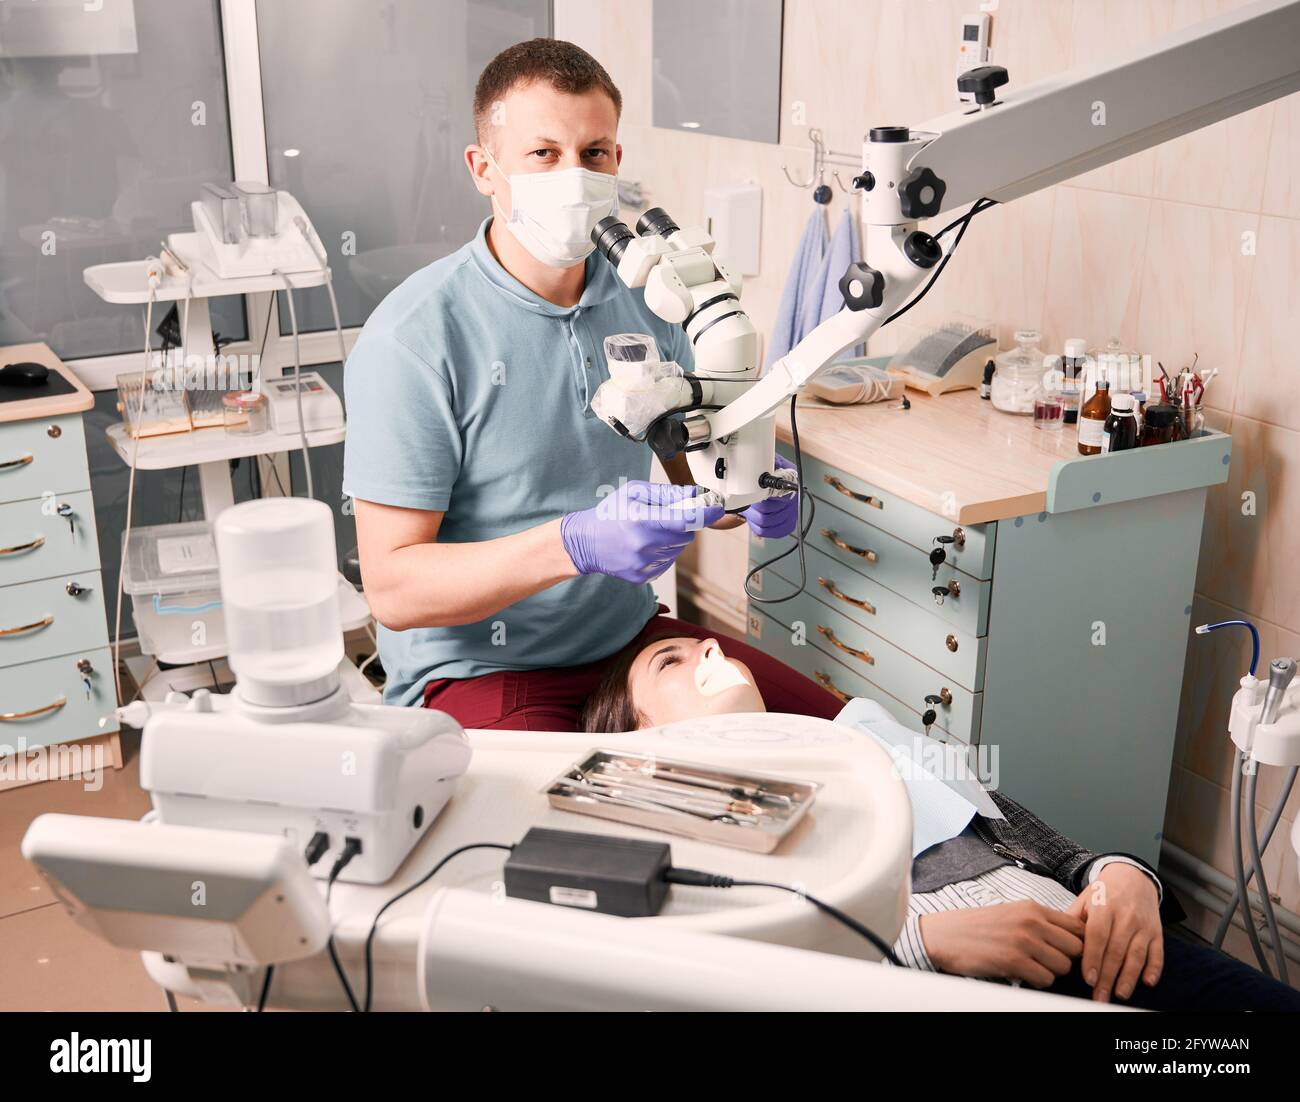 Jeune homme dentiste utilisant un microscope de diagnostic dentaire regardant la caméra pendant que la patiente est allongée dans une chaise dentaire. Concept de la dentisterie, de la stomatologie et des soins dentaires. Banque D'Images